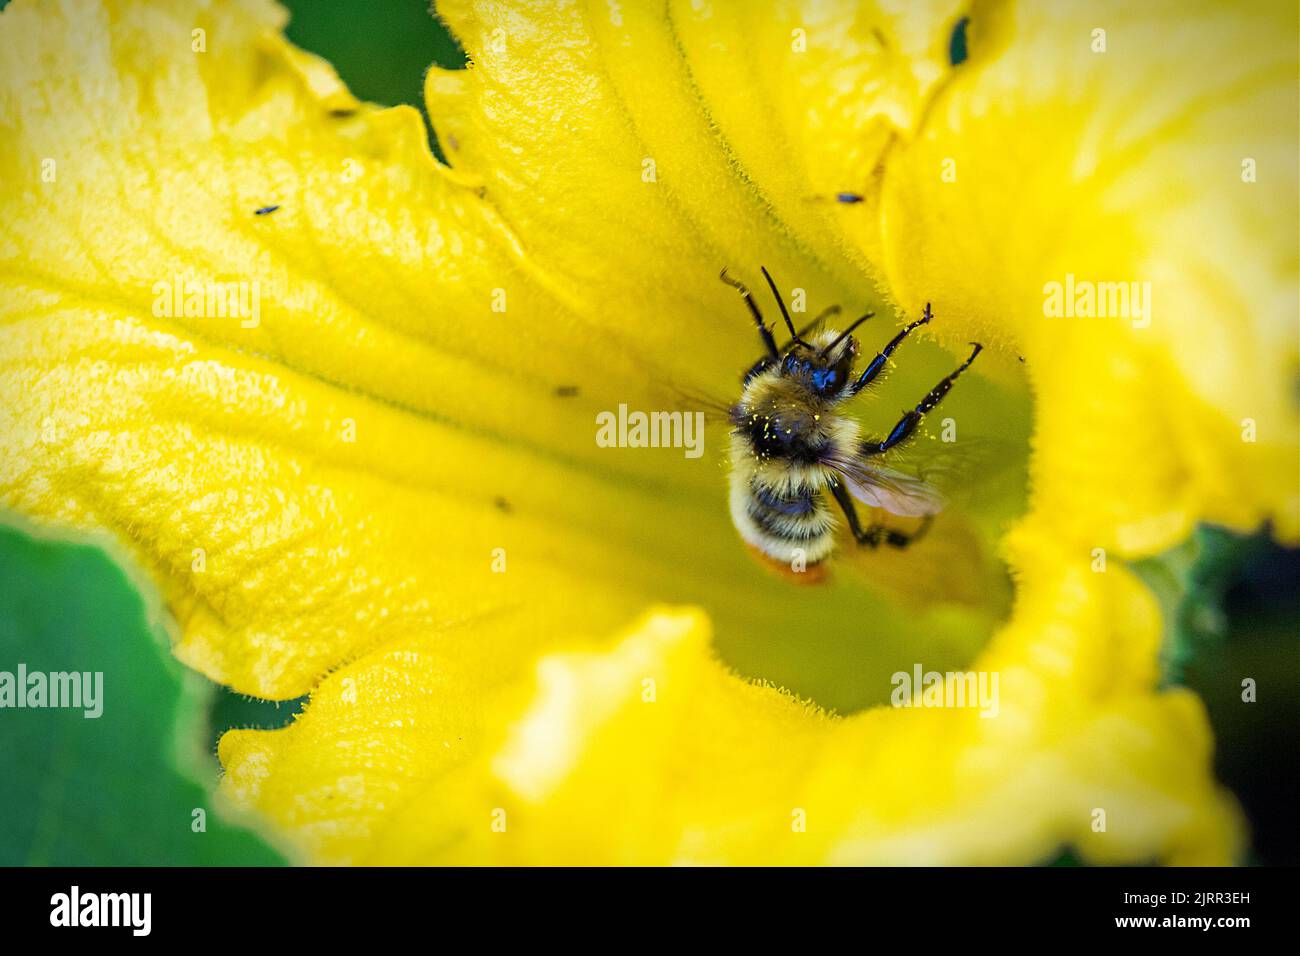 Primer plano de un abejorro de cinturón anaranjado cubierto de polen amarillo mientras recoge el néctar en la flor amarilla. También conocido como abejorro tricolor, esta miel Foto de stock